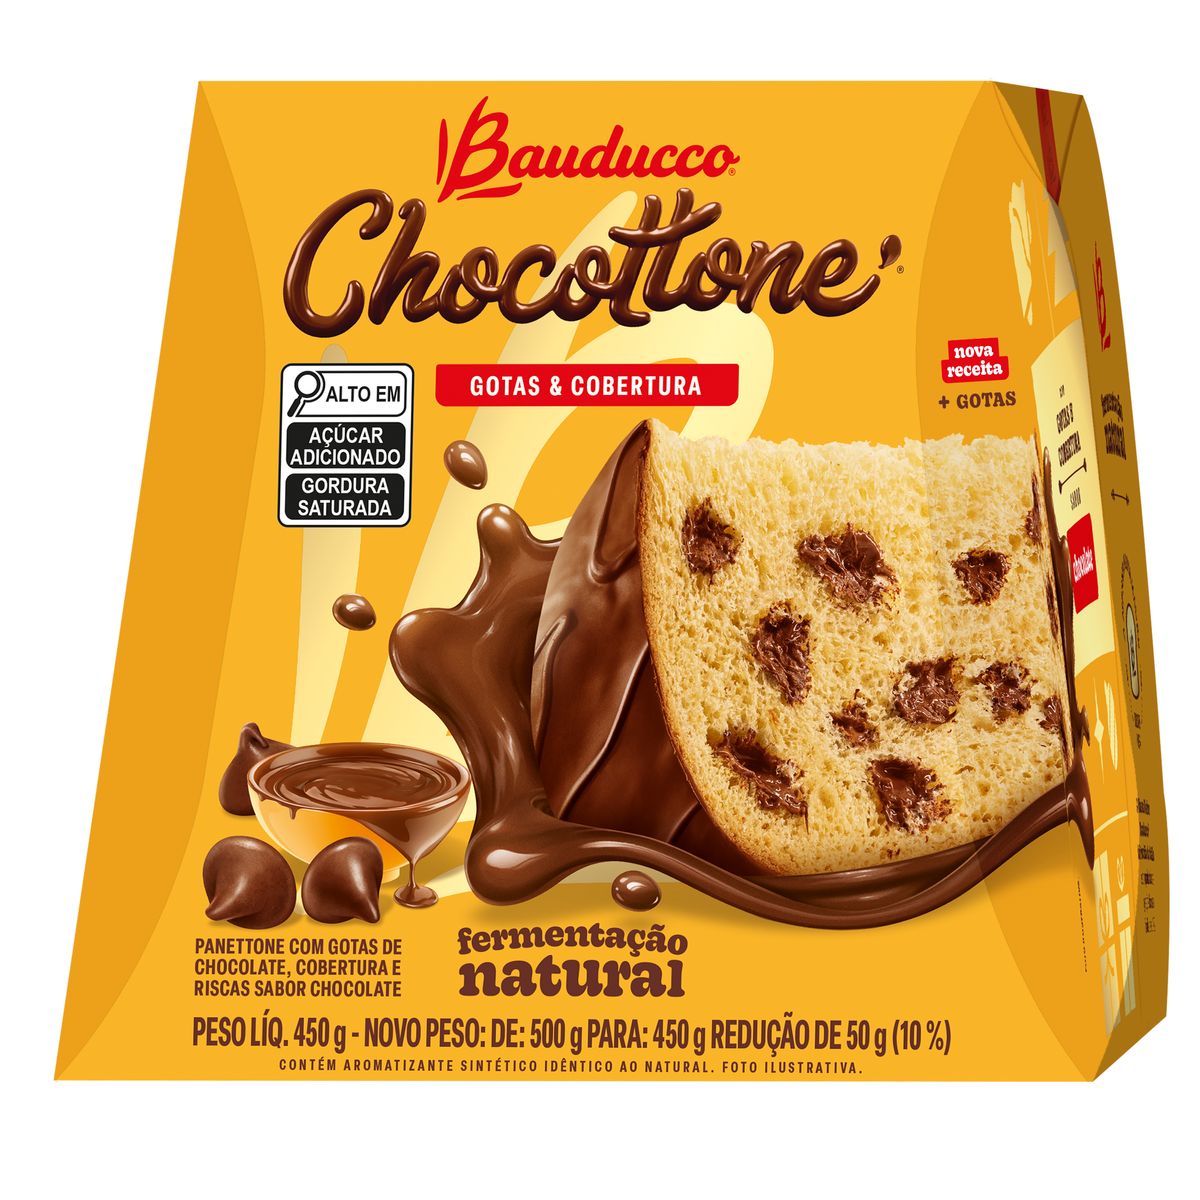 Chocottone Bauducco Gotas e Cobertura de Chocolate 450g